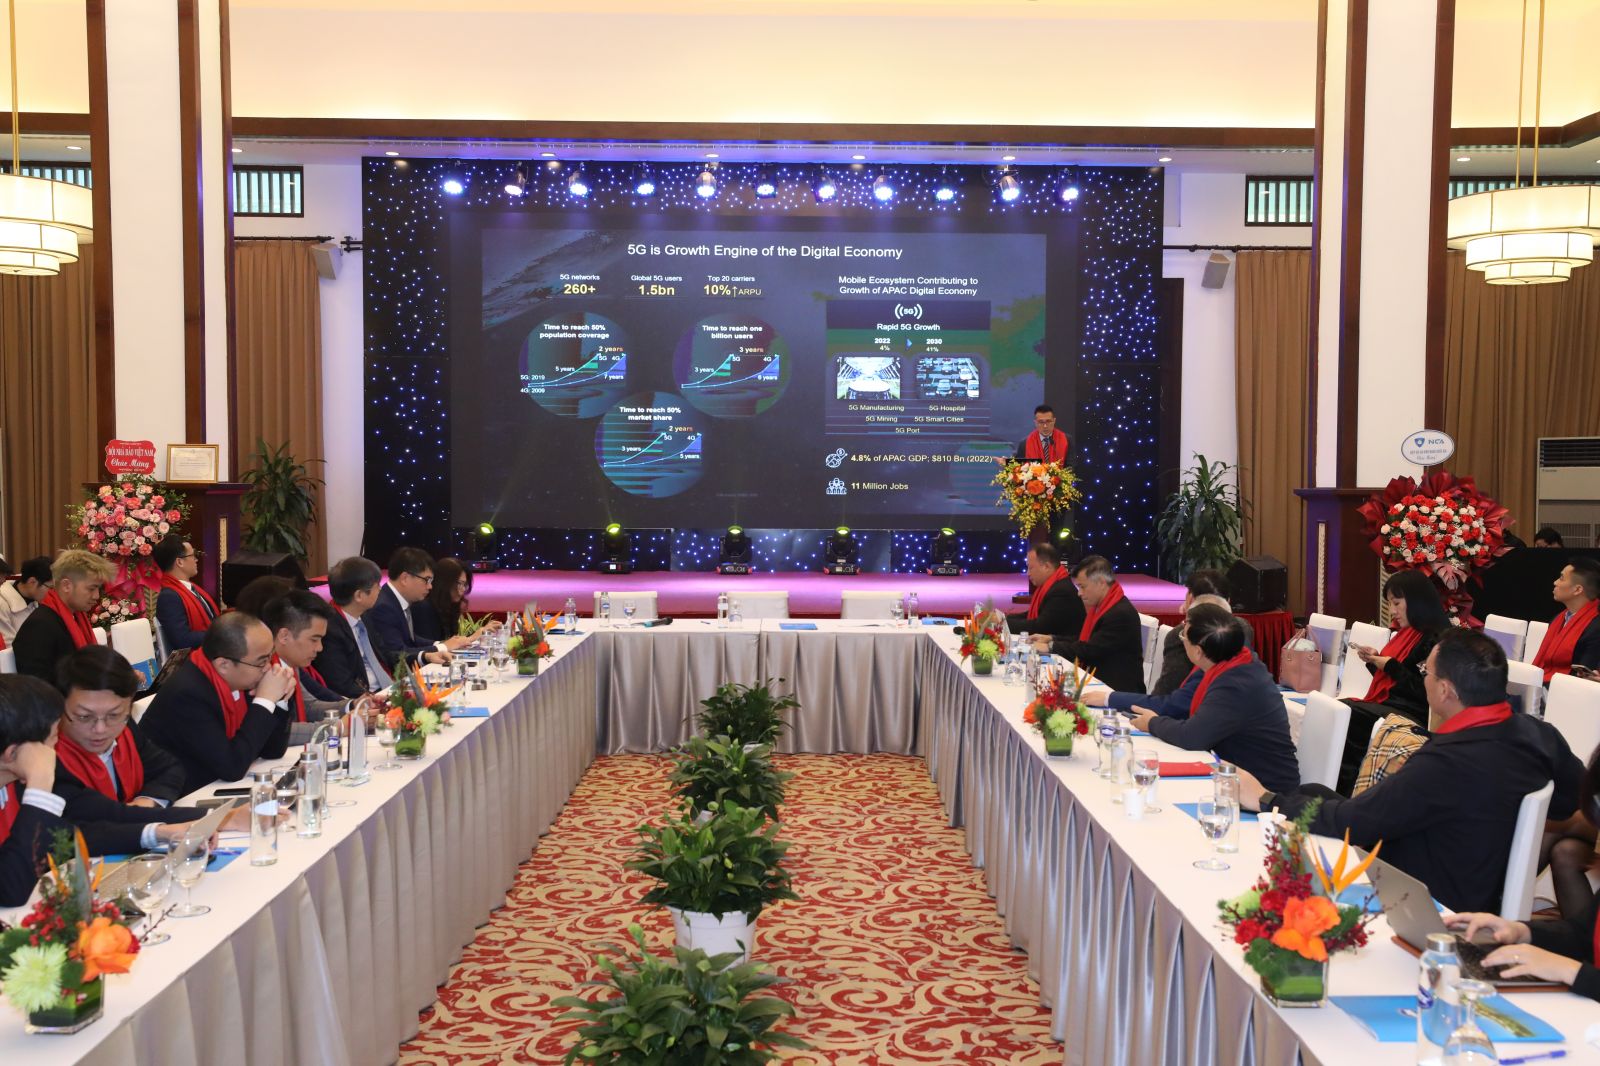 tọa đàm “Thương mại hóa 5G, xây dựng hạ tầng số cho Việt Nam” do câu lạc bộ Nhà báo Công nghệ thông tin Việt nam tổ chức